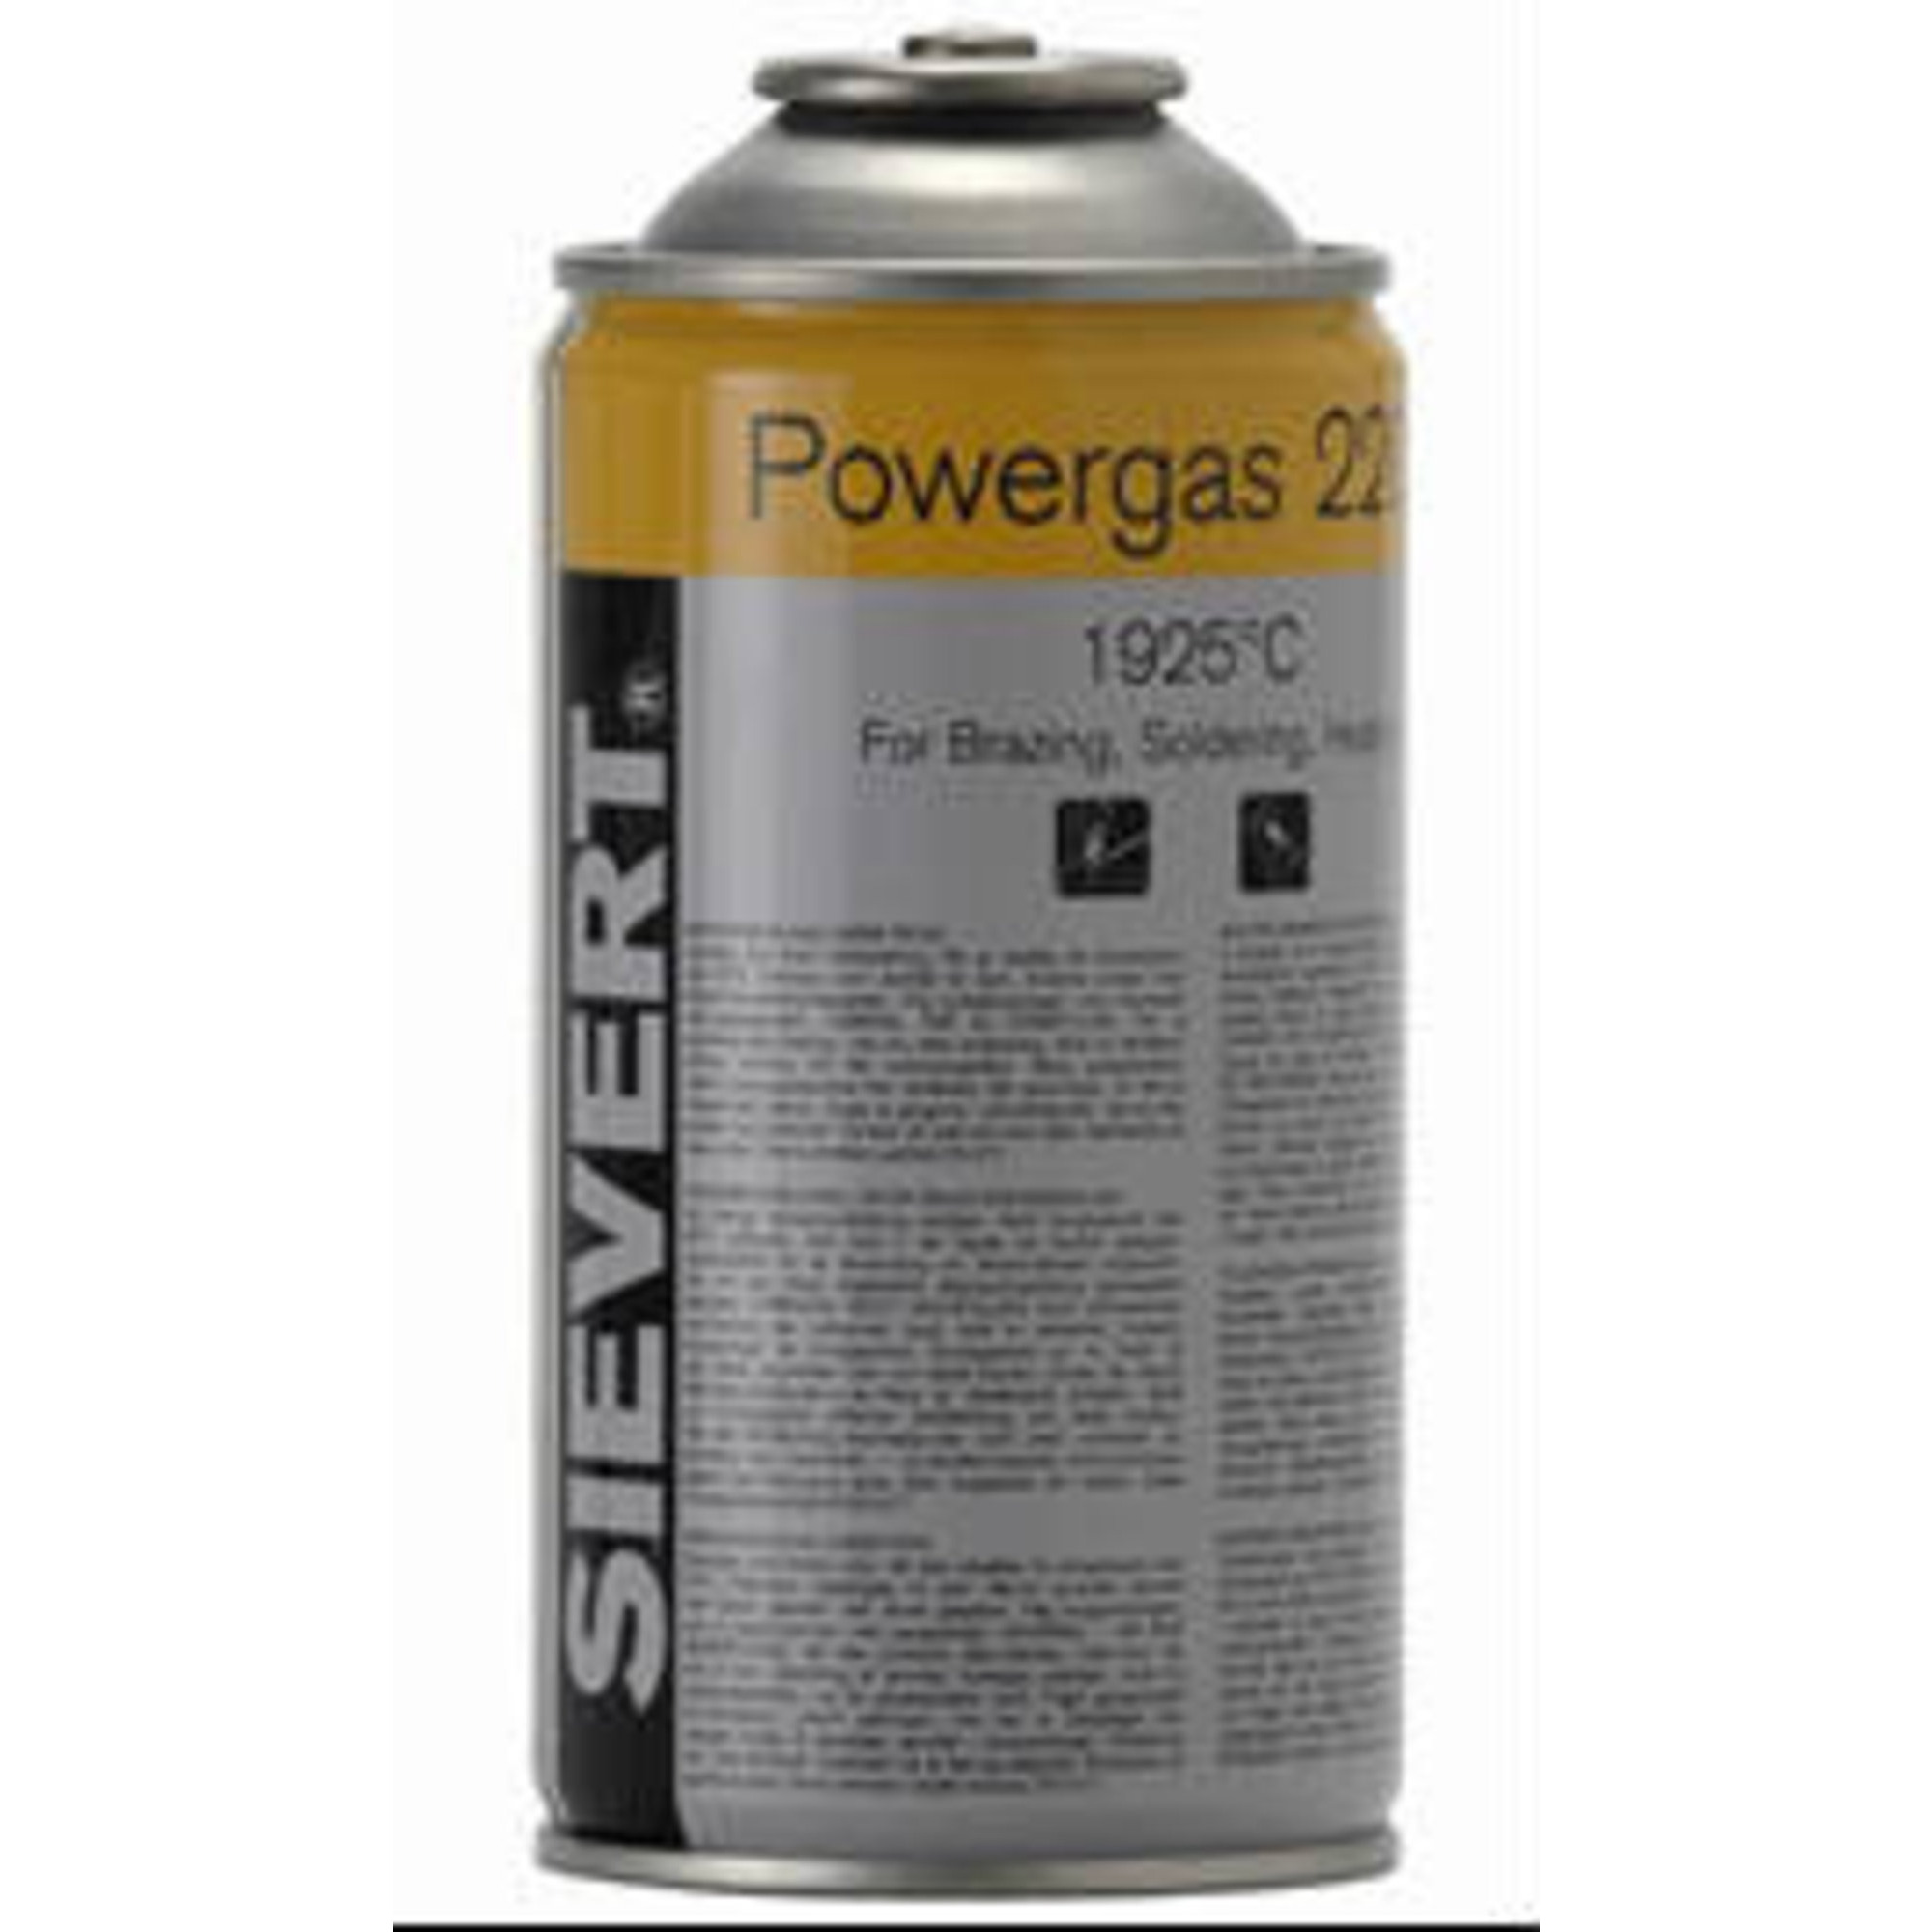 Image of Sievert Gas till Handyjet Gasbrännare 300 ml